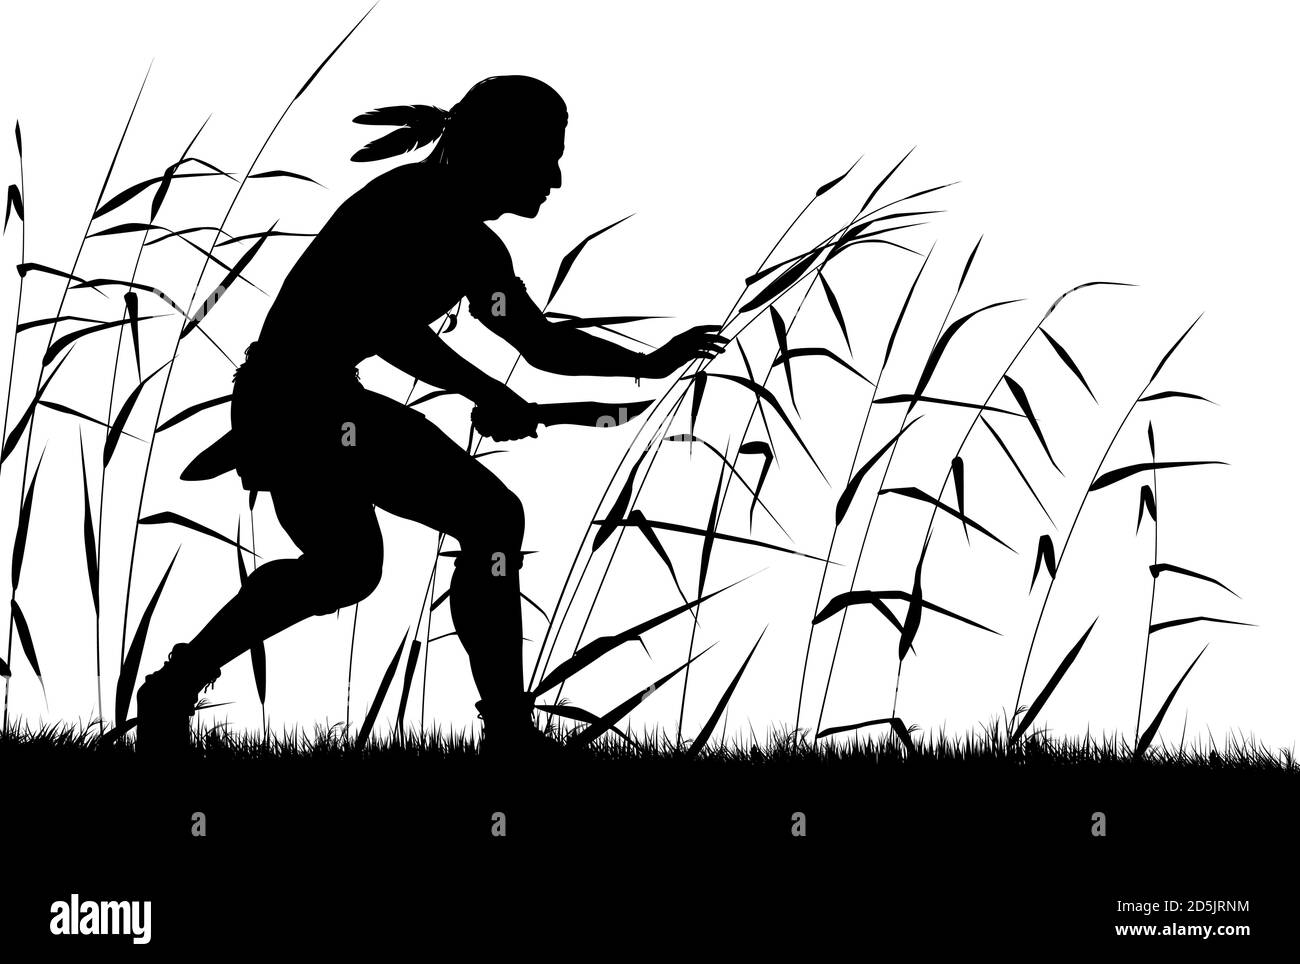 Silhouette vettoriale modificabile di un uomo nordamericano che strisce attraverso le canne con l'uomo, il coltello e la vegetazione come oggetti separati Illustrazione Vettoriale